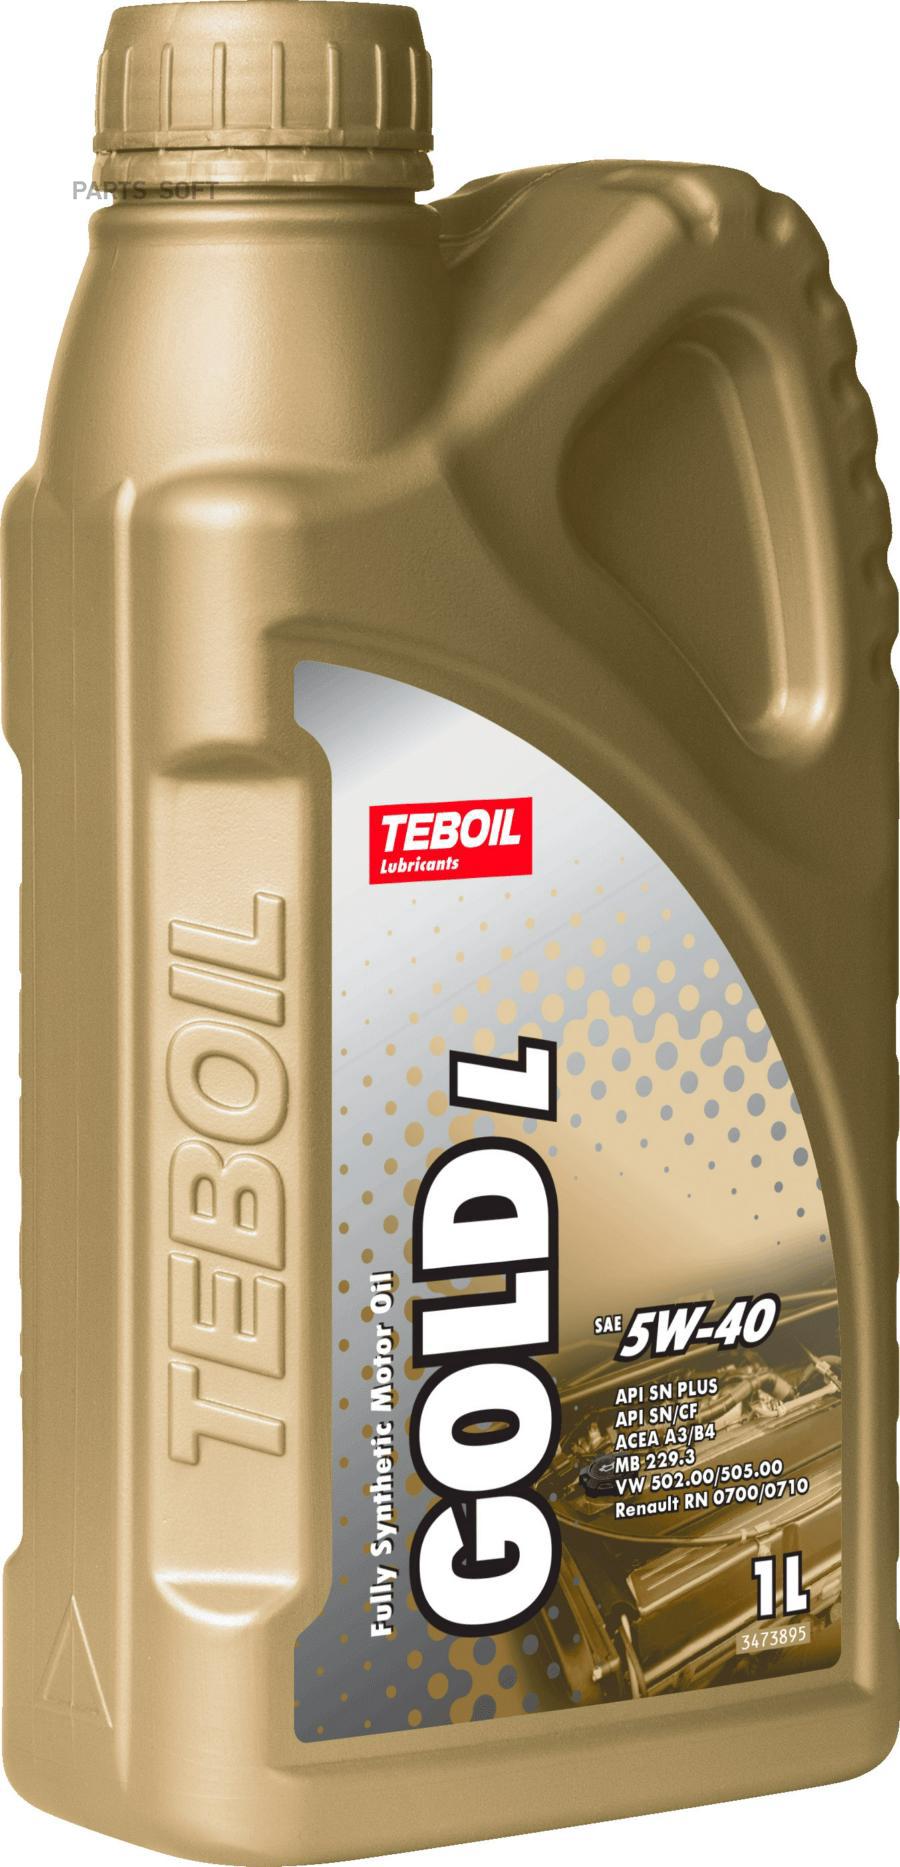 Моторное масло Teboil синтетическое 5w40 Gold L Api Sn/Cf Acea A3/B4 1л